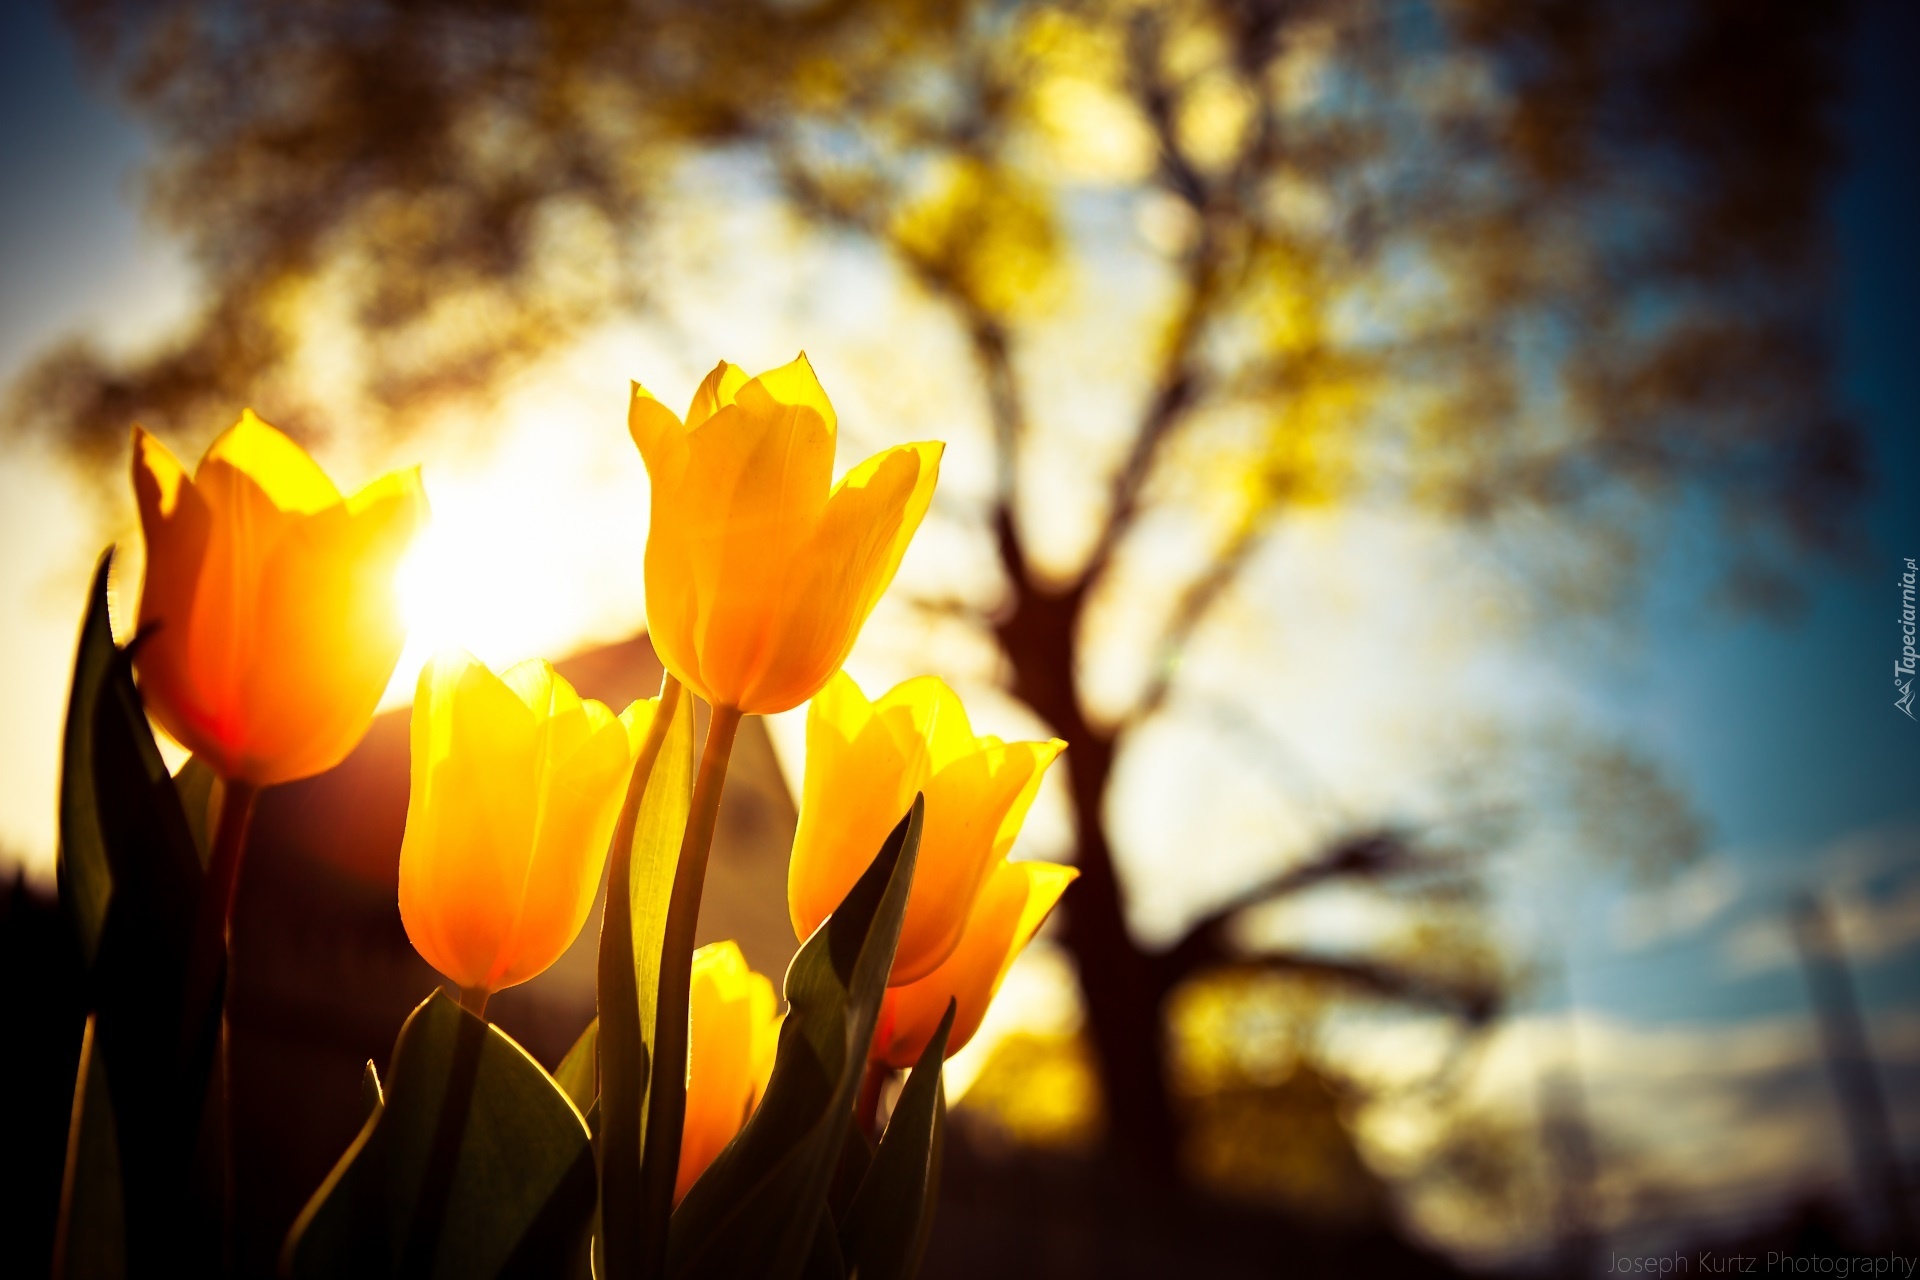 Tulipany, Światło, Drzewo